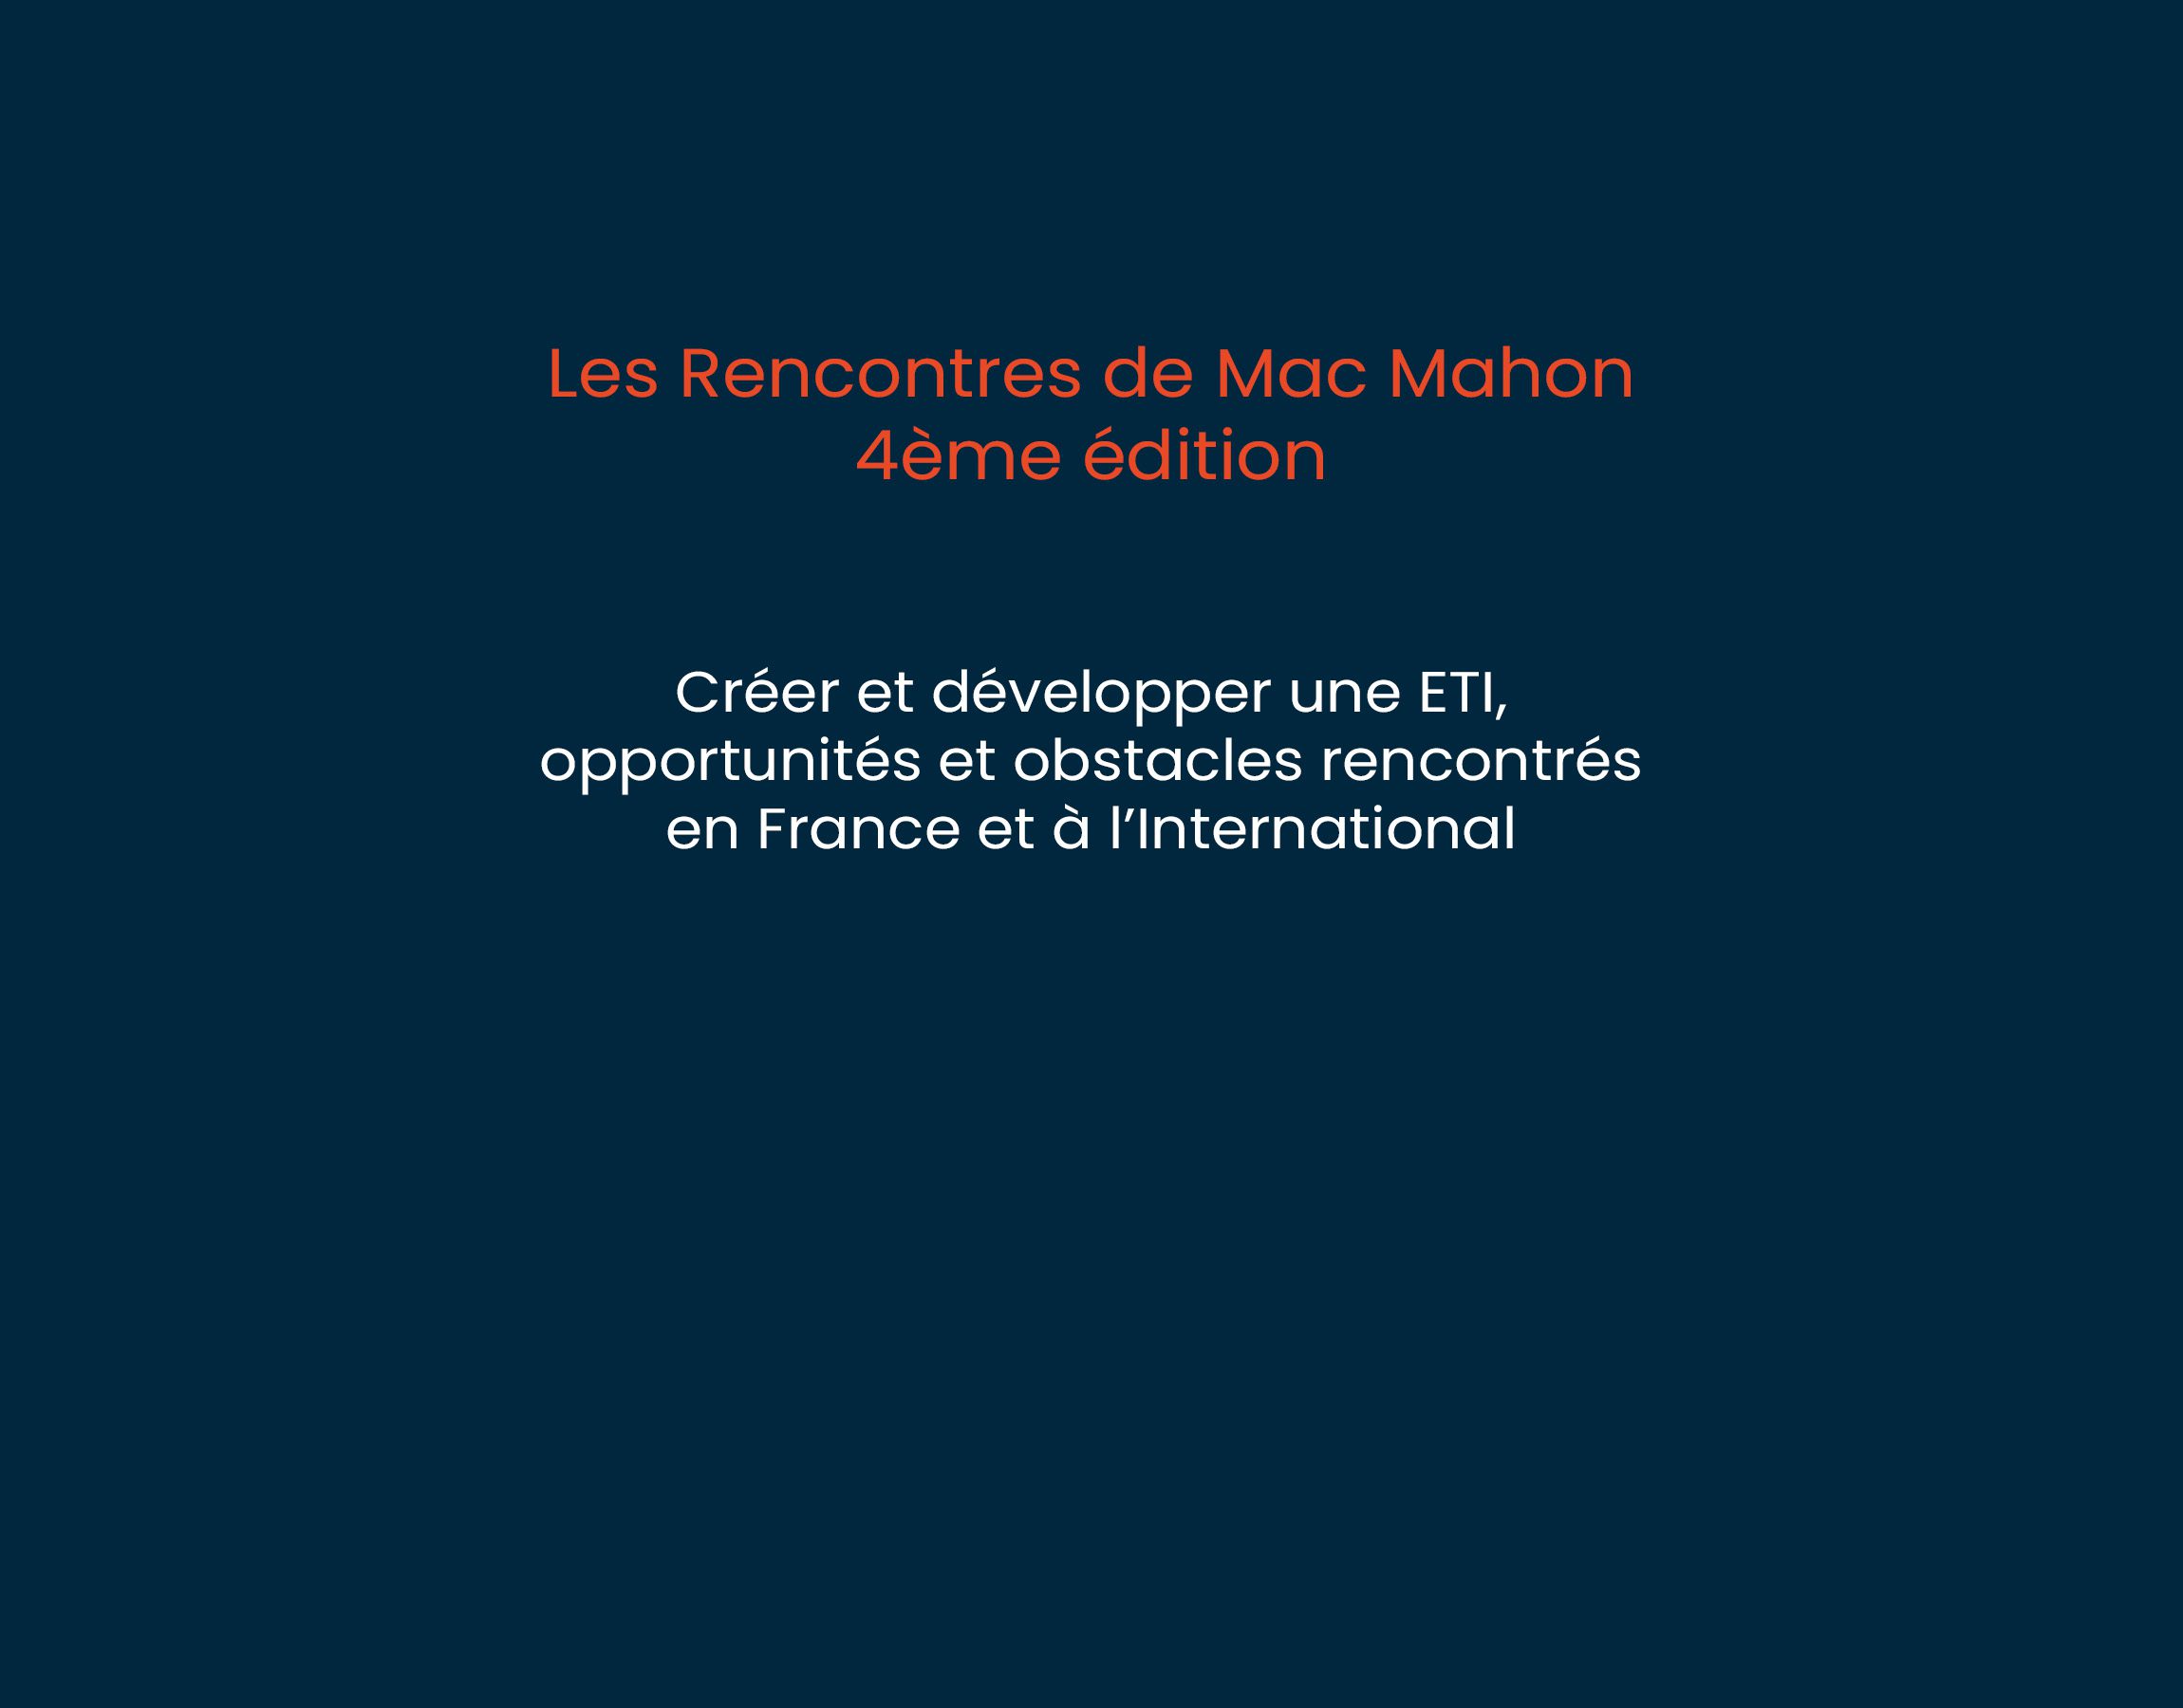 4ème édition “Les Rencontres de Mac Mahon”